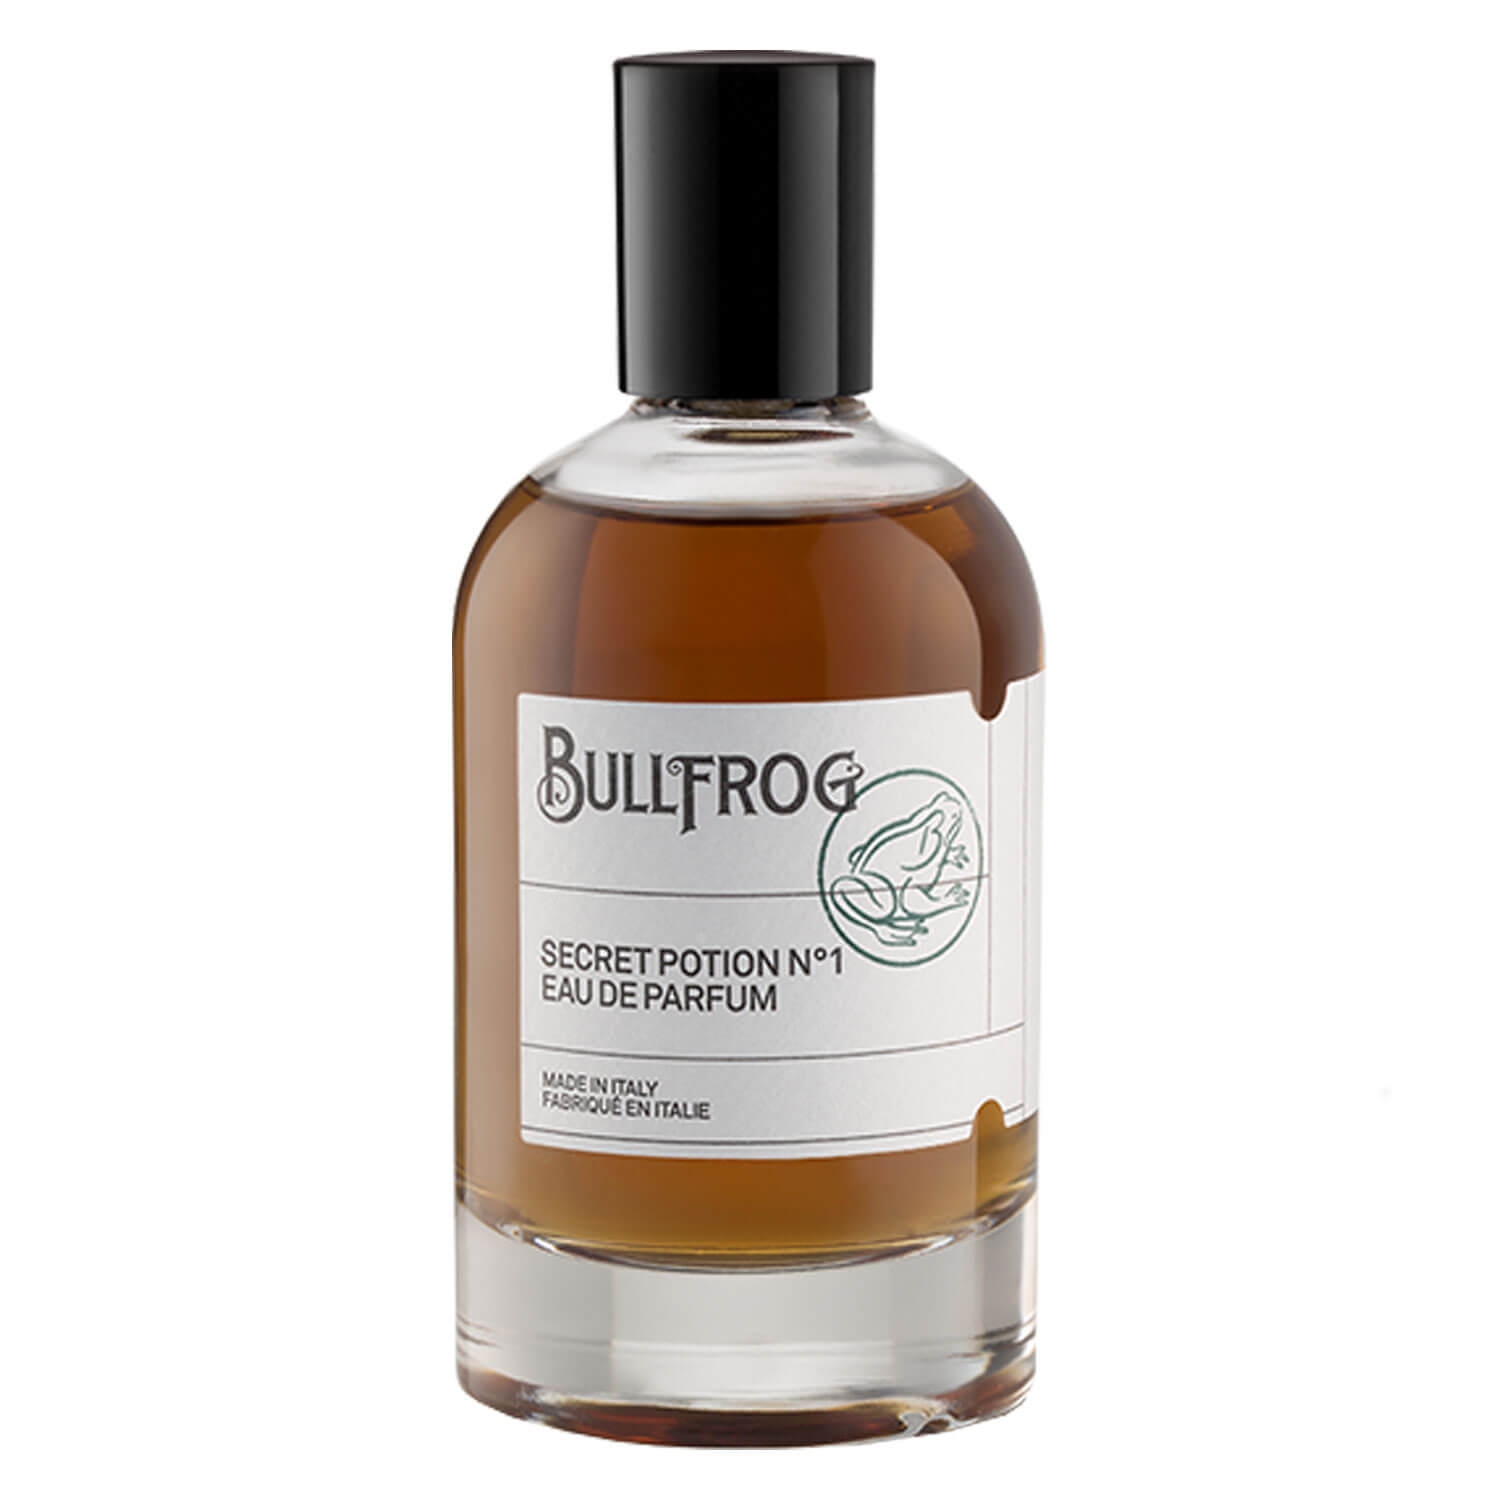 Produktbild von BULLFROG - Eau de Parfum Secret Potion N°1